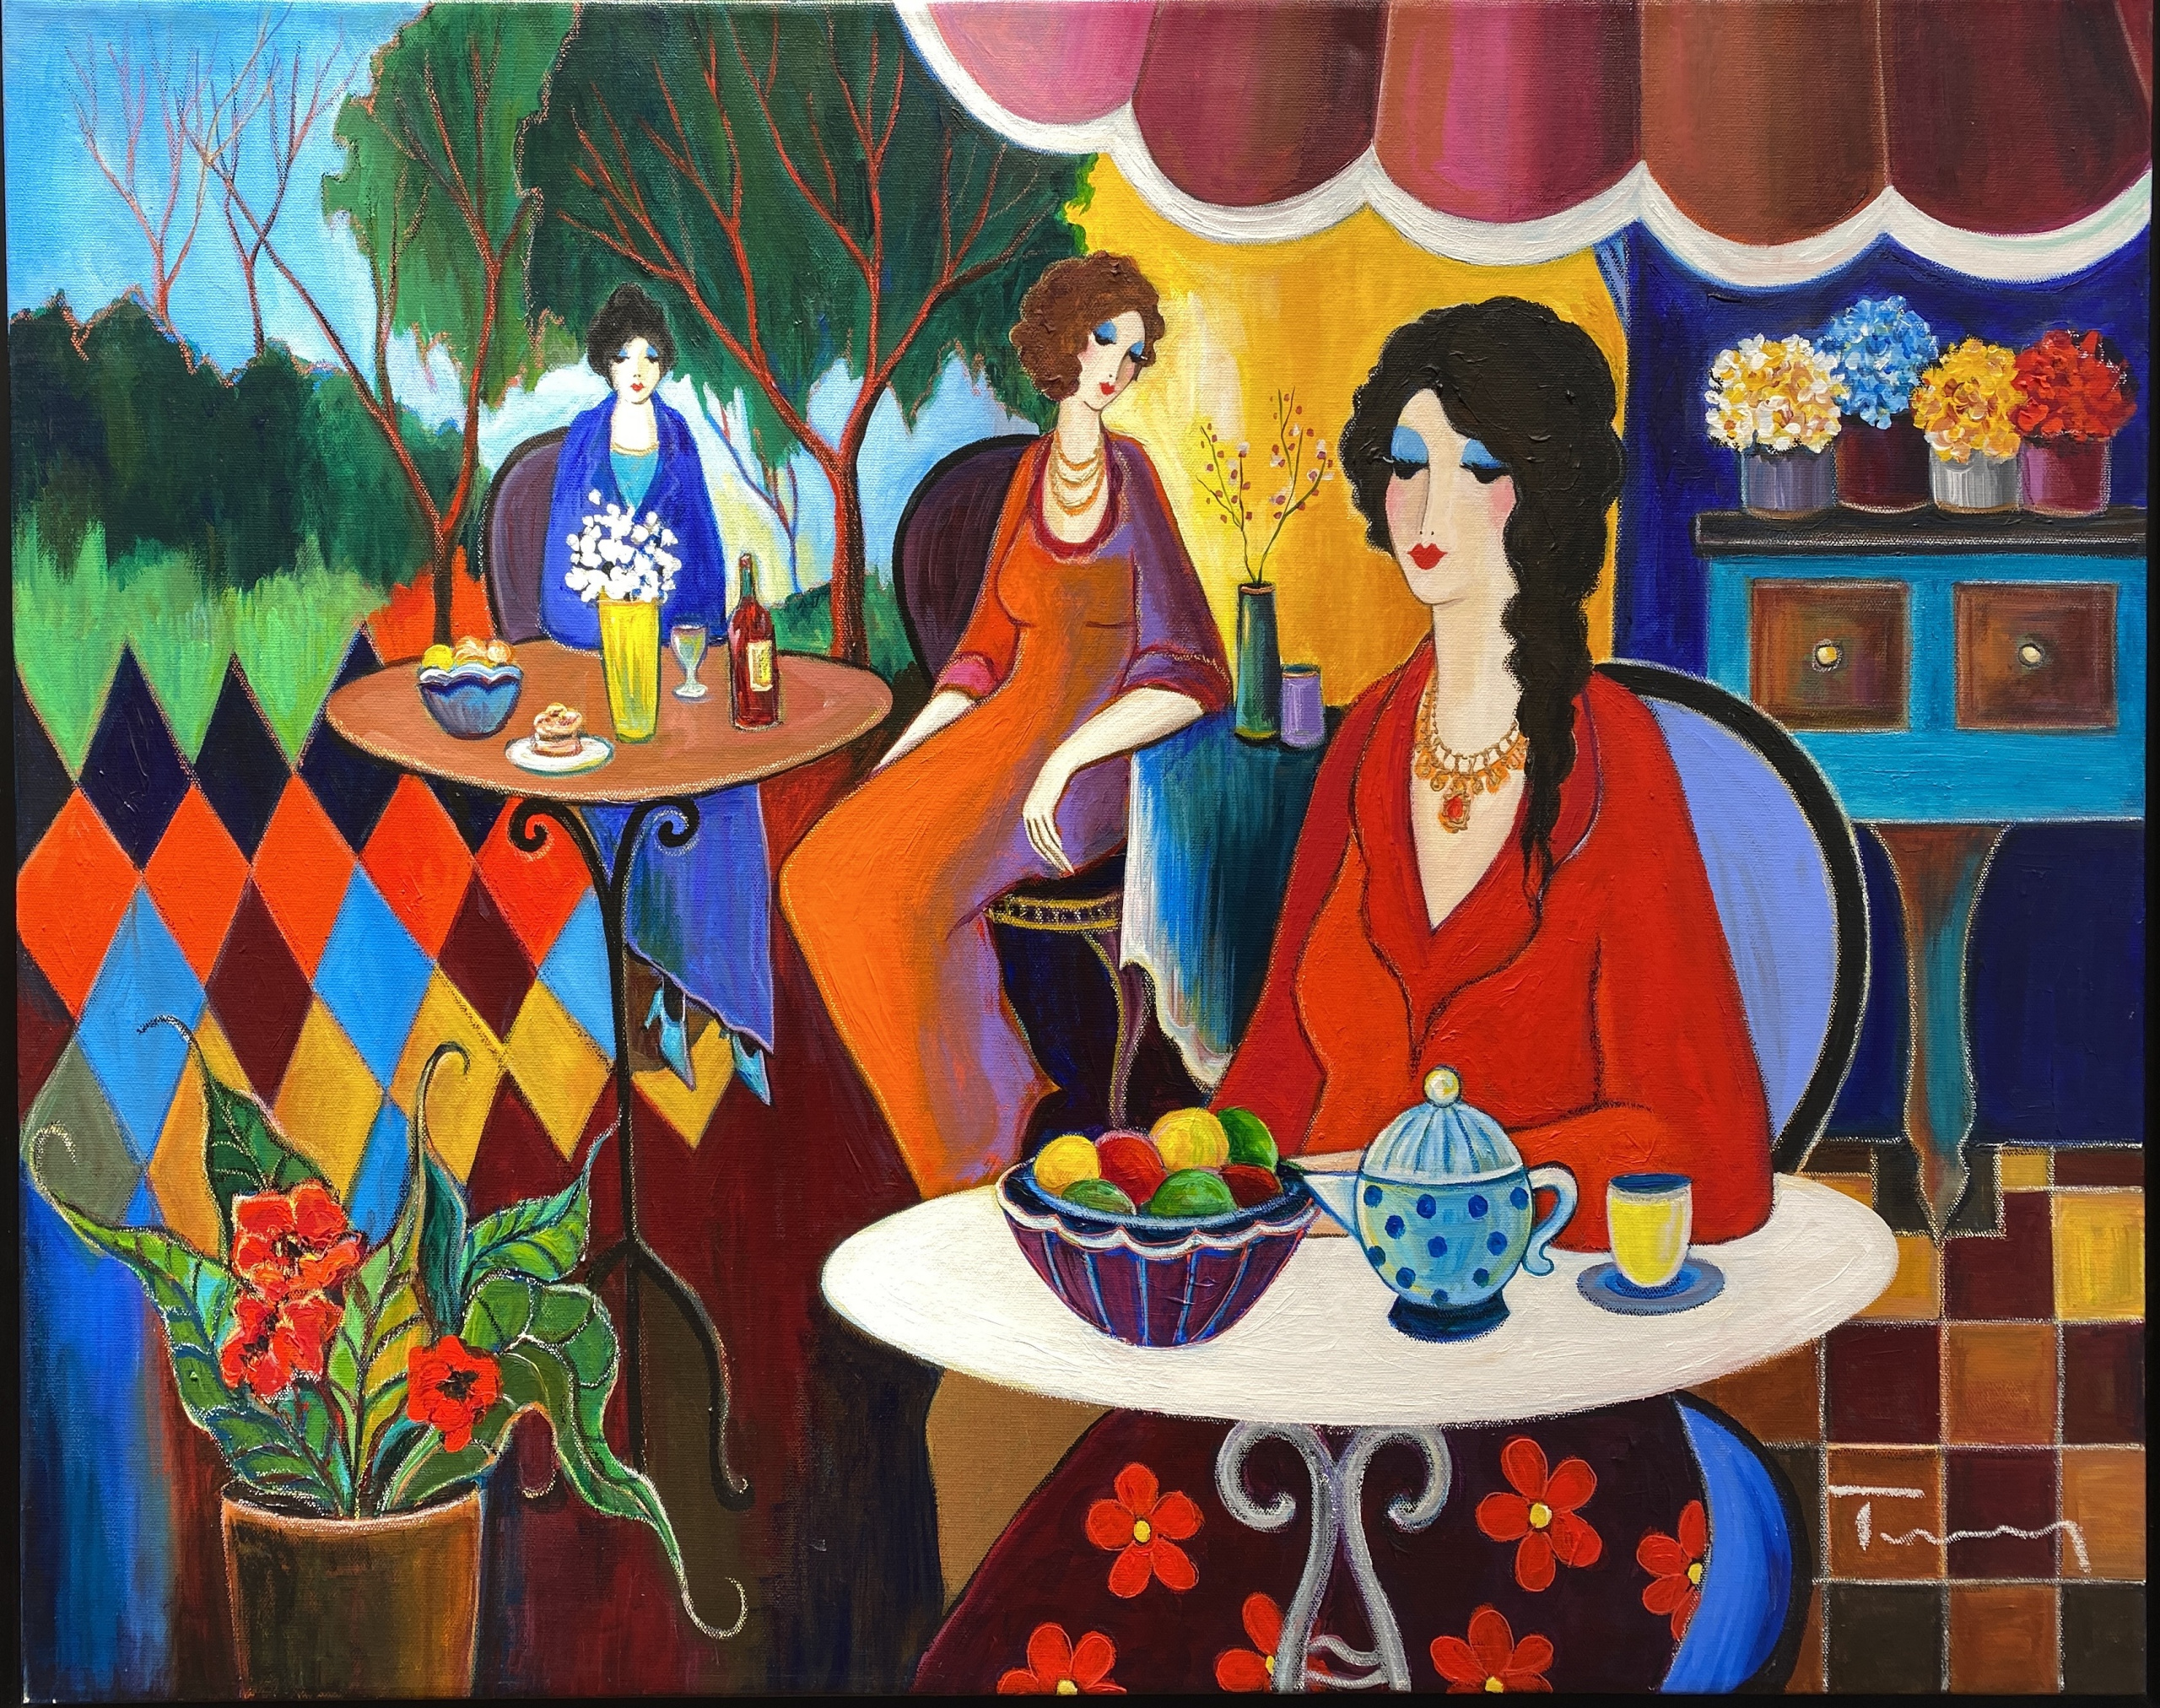 Itzchak Tarkay - Women in the coffee shop - Kings Gallery - Jerusalem - Fine art - Israeli artist - artwork.